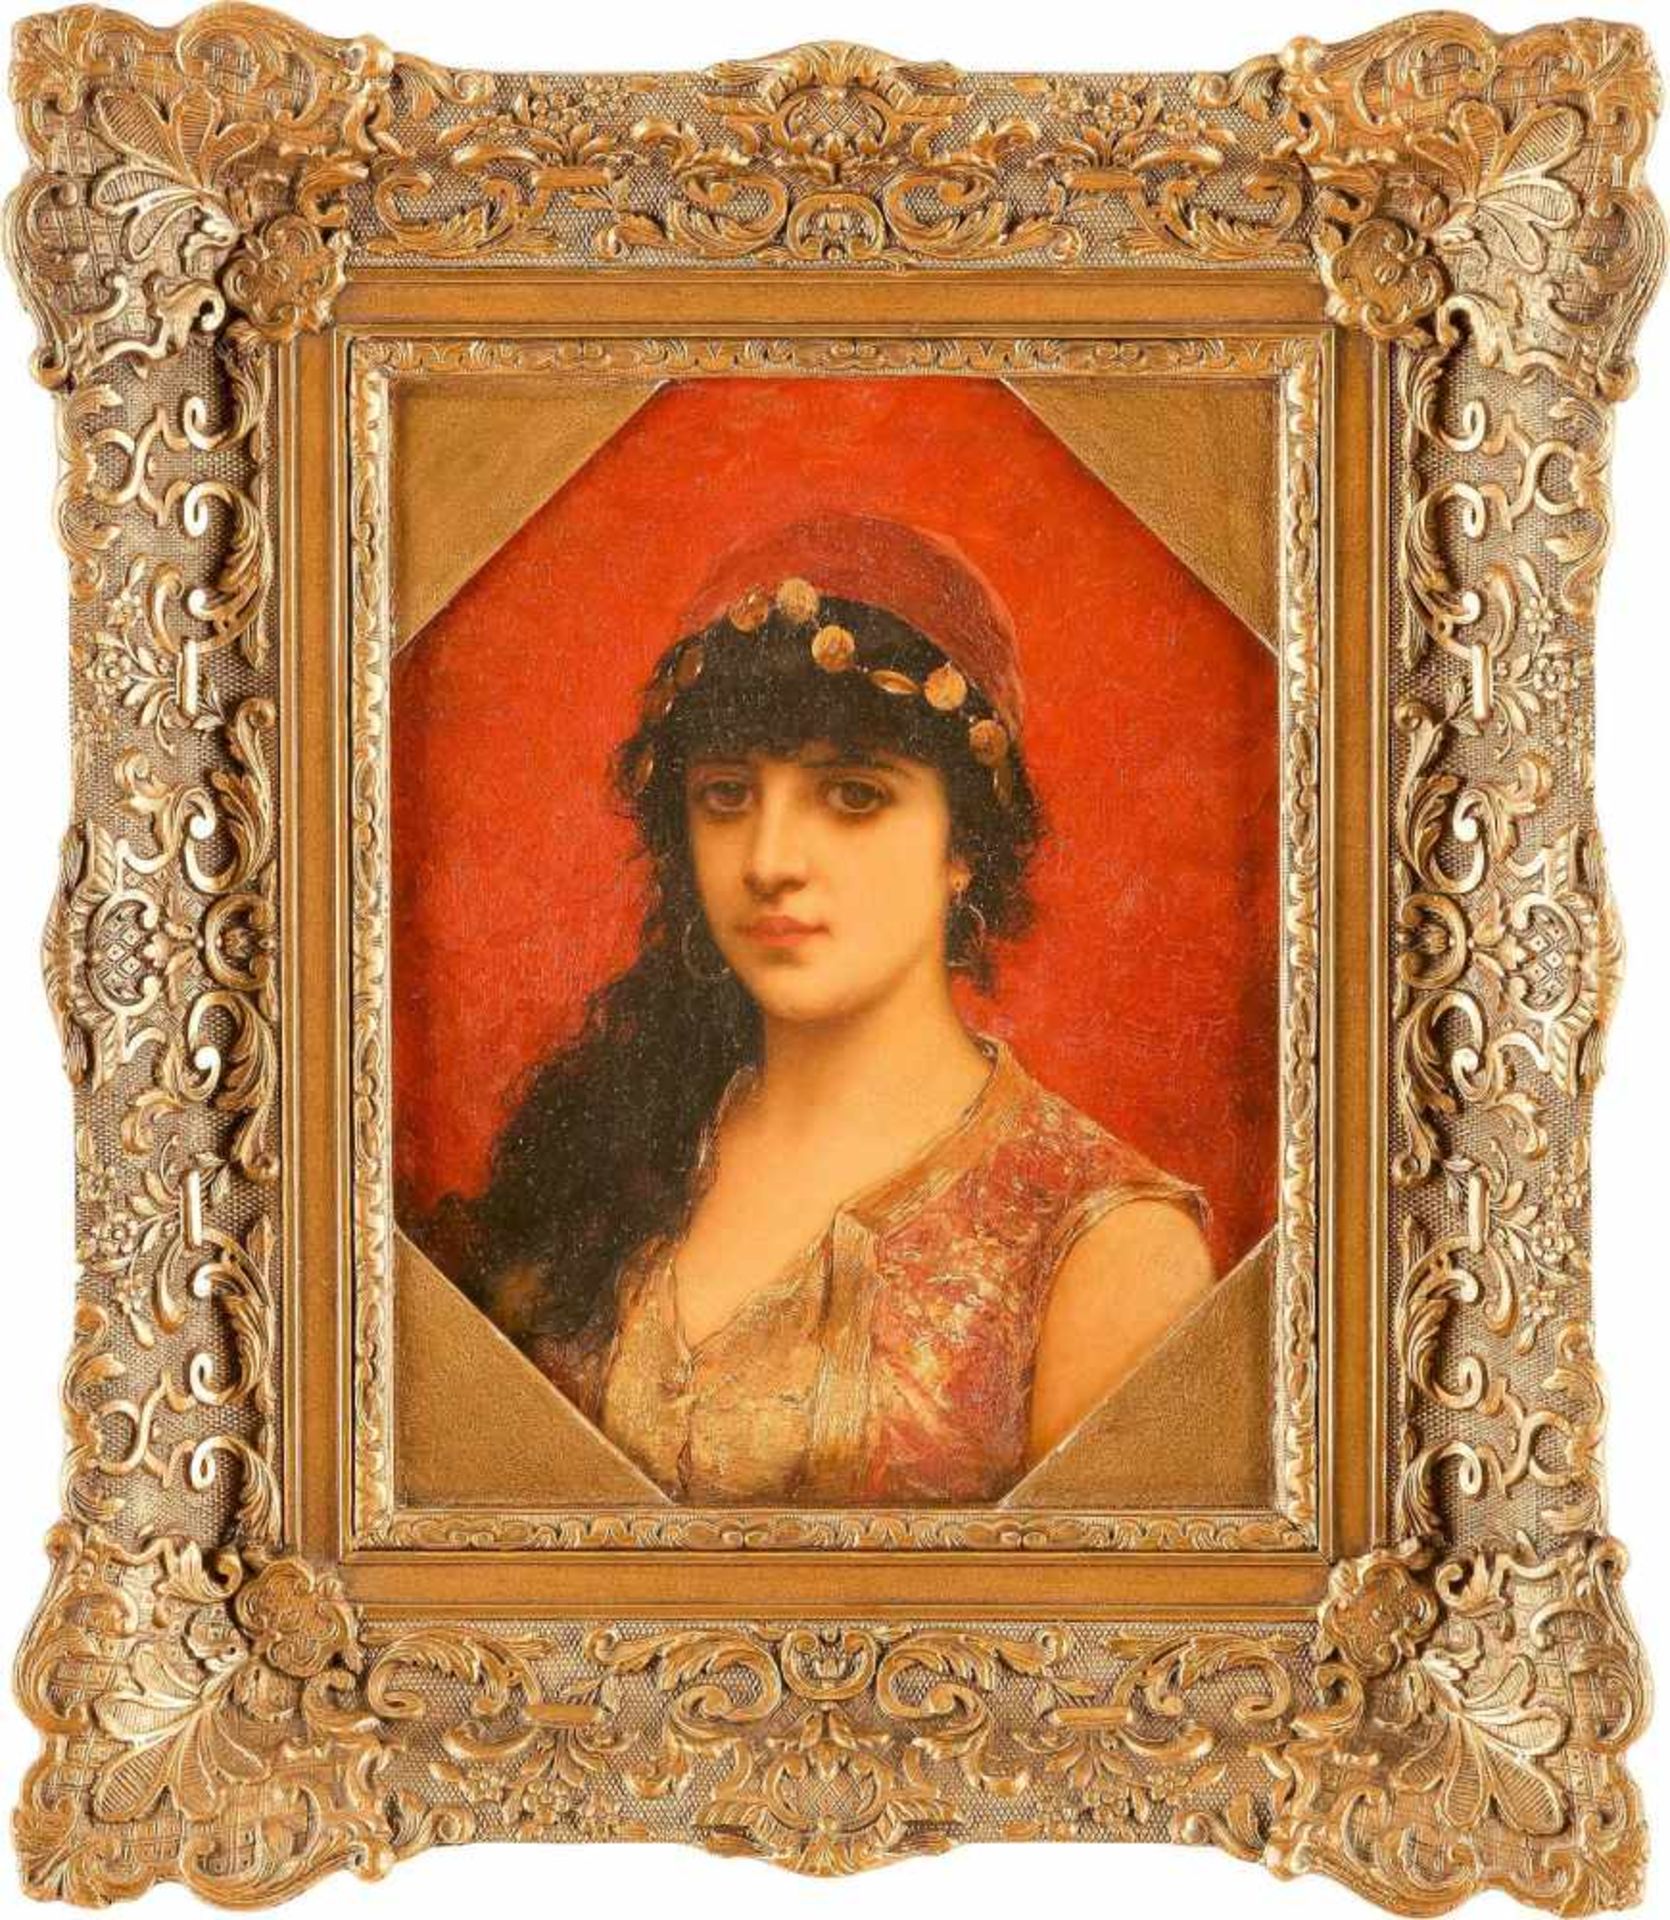 ÉMILE EISMAN-SEMENOWSKY 1857 Polen - 1911 Paris (attr.) Orientalische Schönheit Öl auf Holztafel. 27 - Bild 2 aus 2